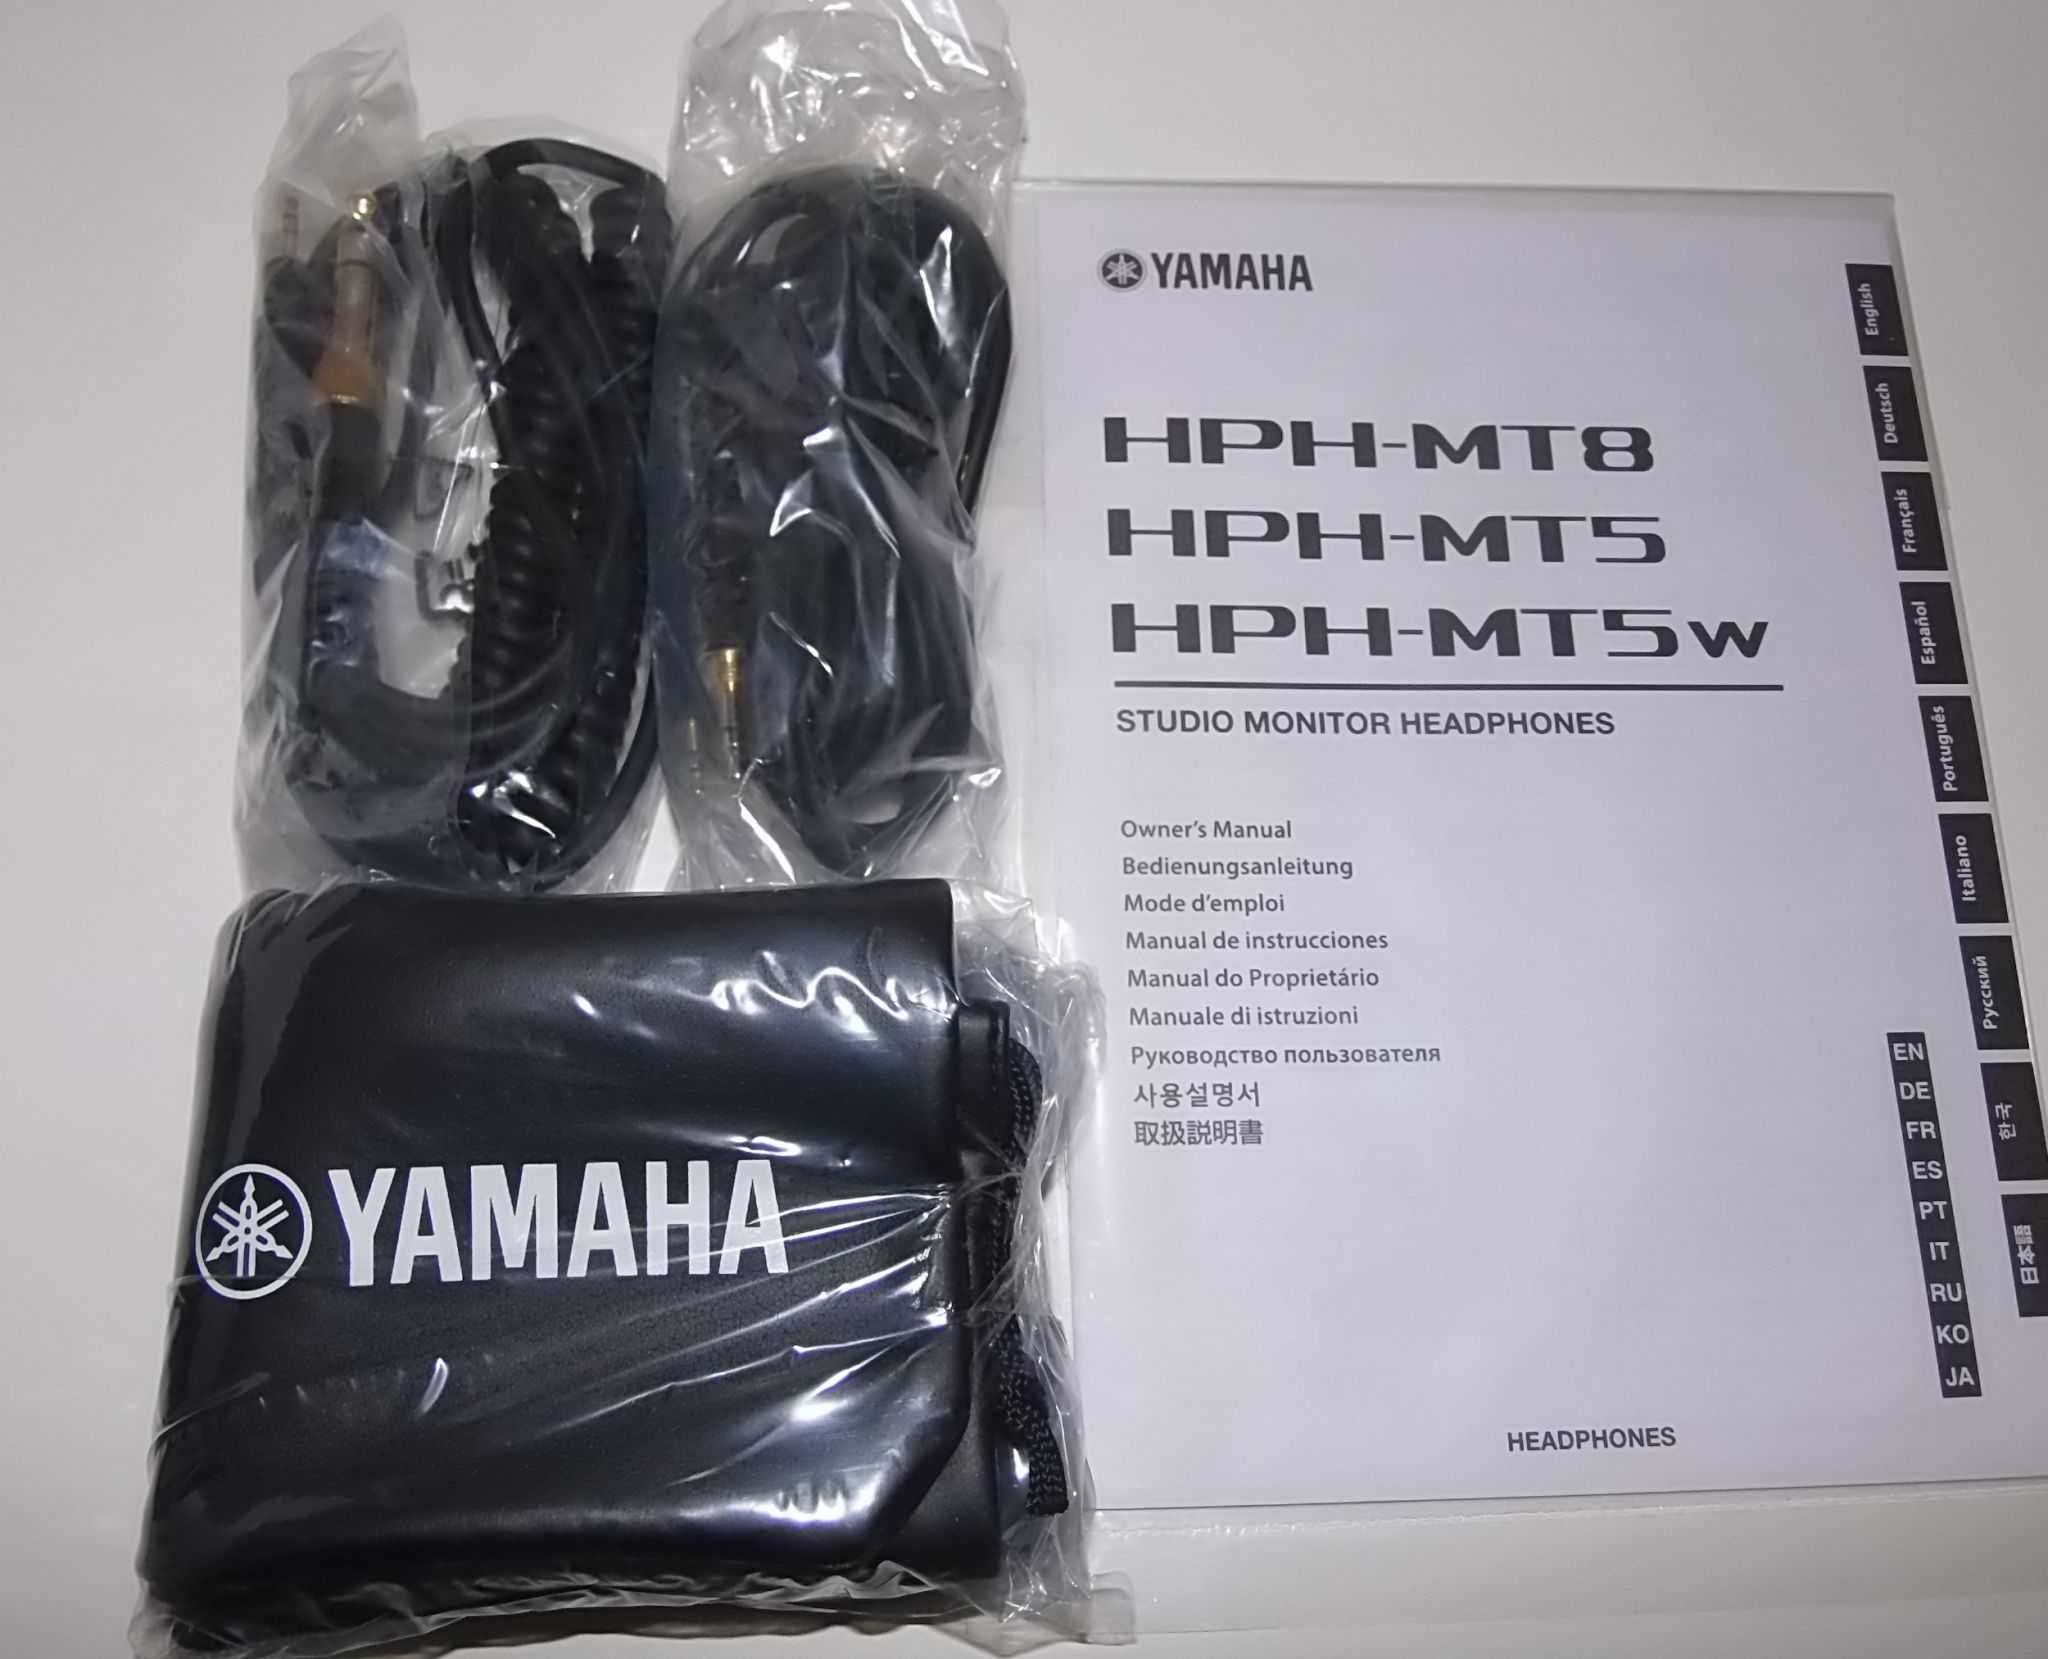 Обзор yamaha hph-mt8 — студийные наушники с хорошим звуком